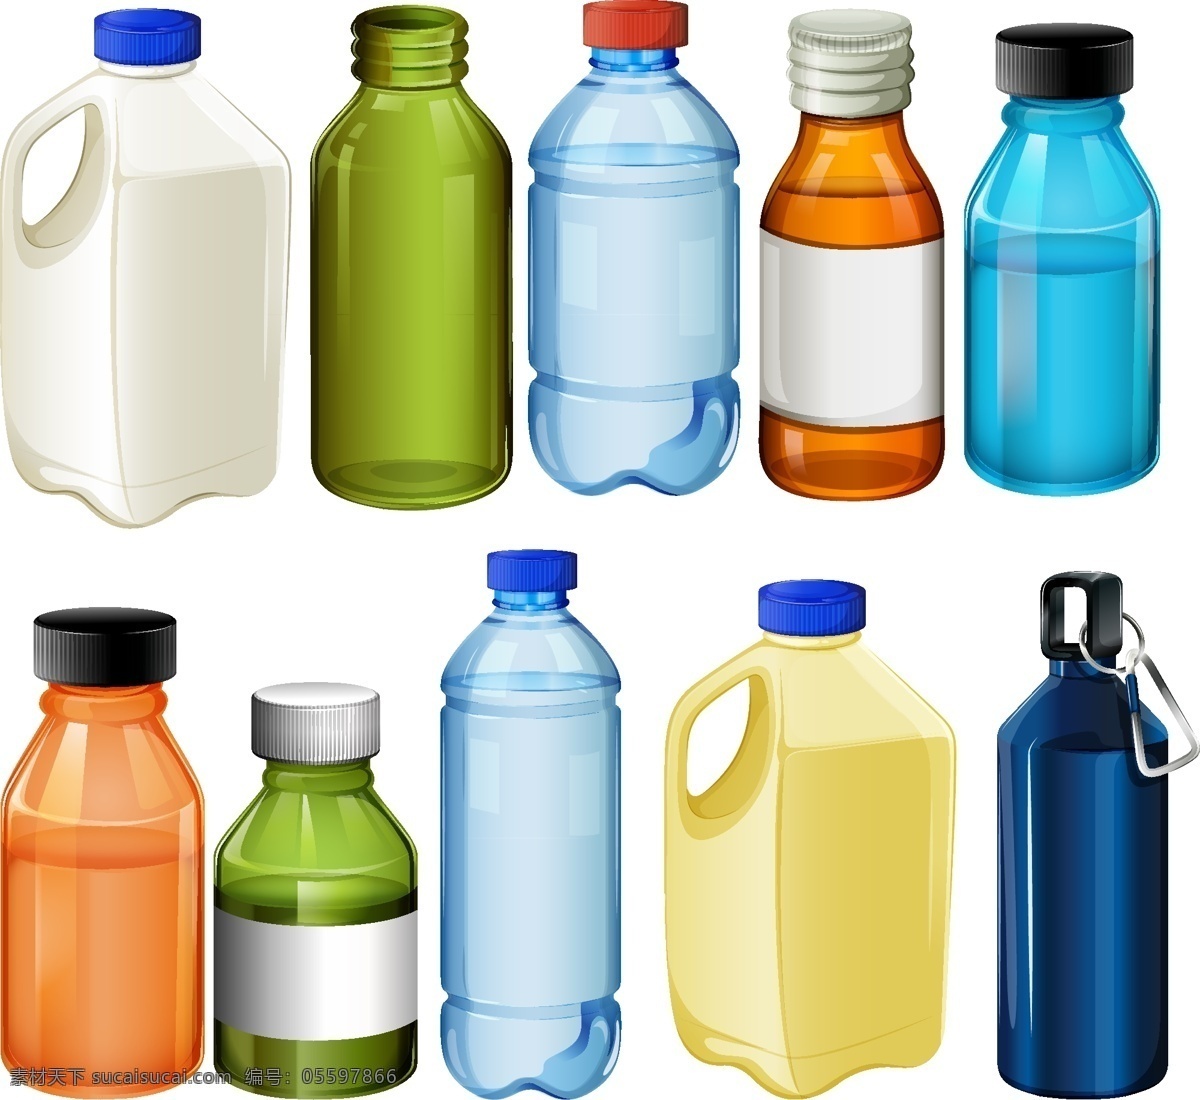 瓶子 包装设计 矢量 包装 塑料瓶 玻璃瓶 酒瓶 矿泉水瓶 水瓶 药瓶 插画 海报 生活百科 生活用品